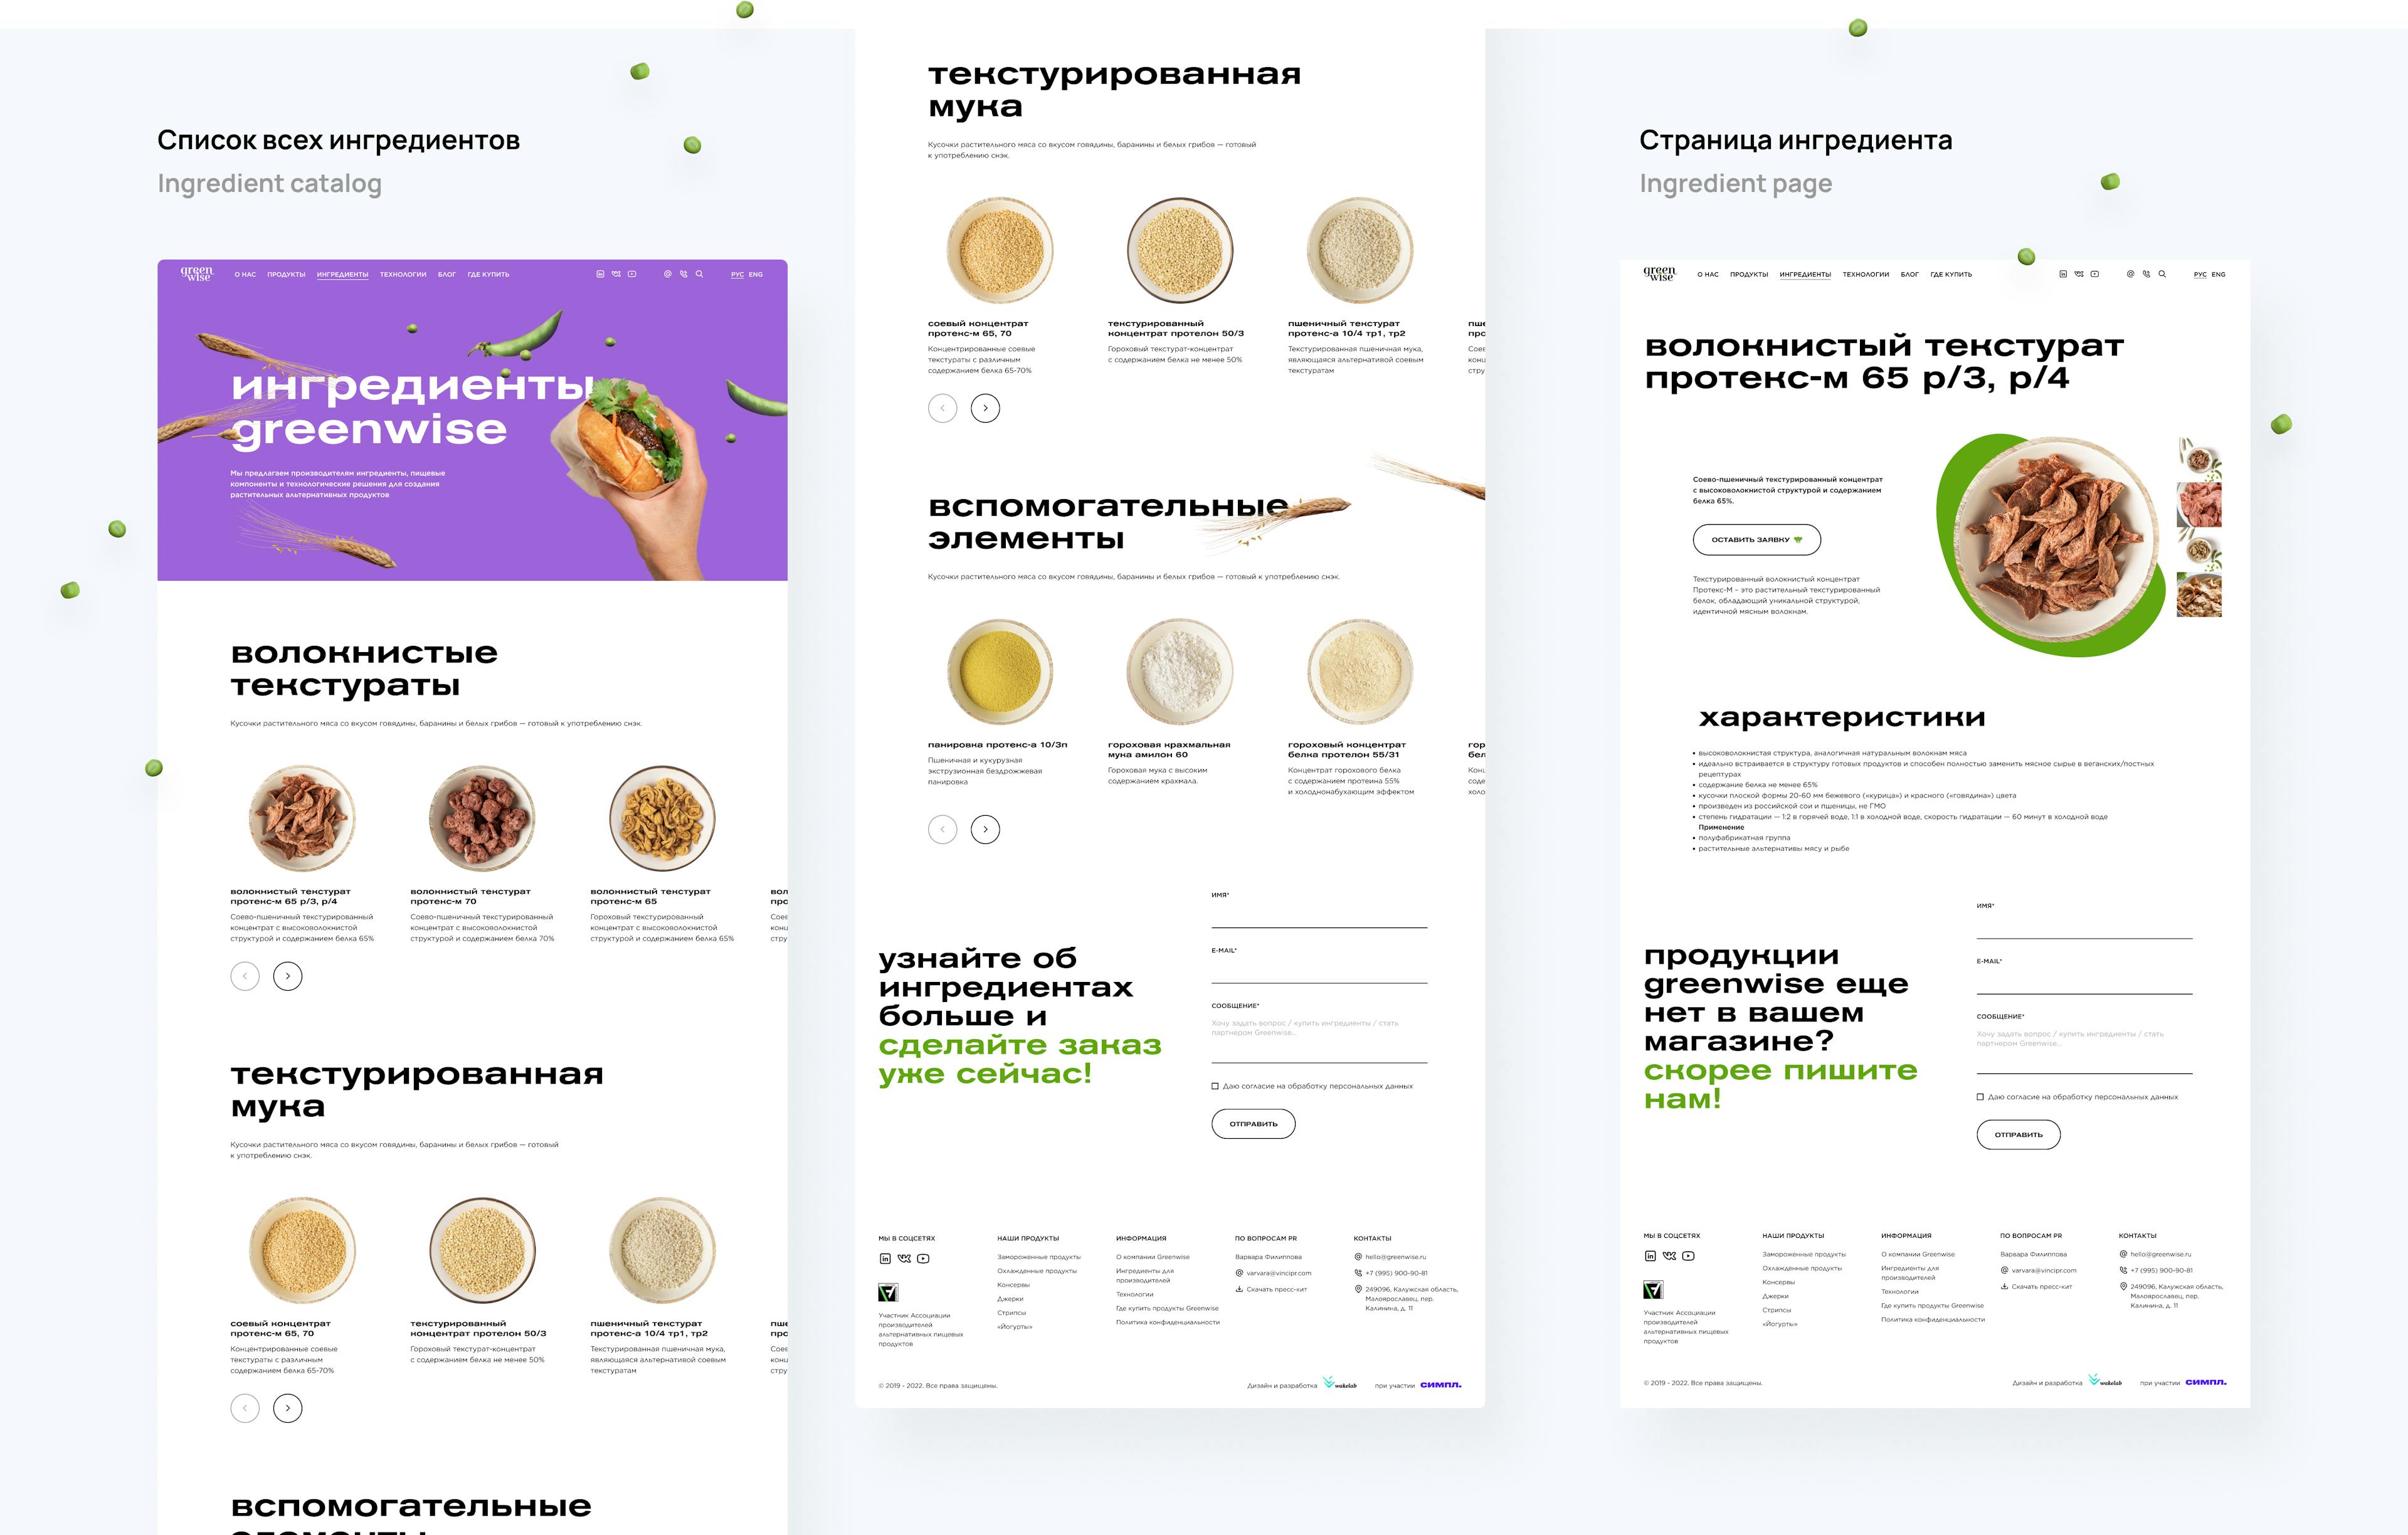 Каталог ингредиентов и страница ингредиента Greenwise